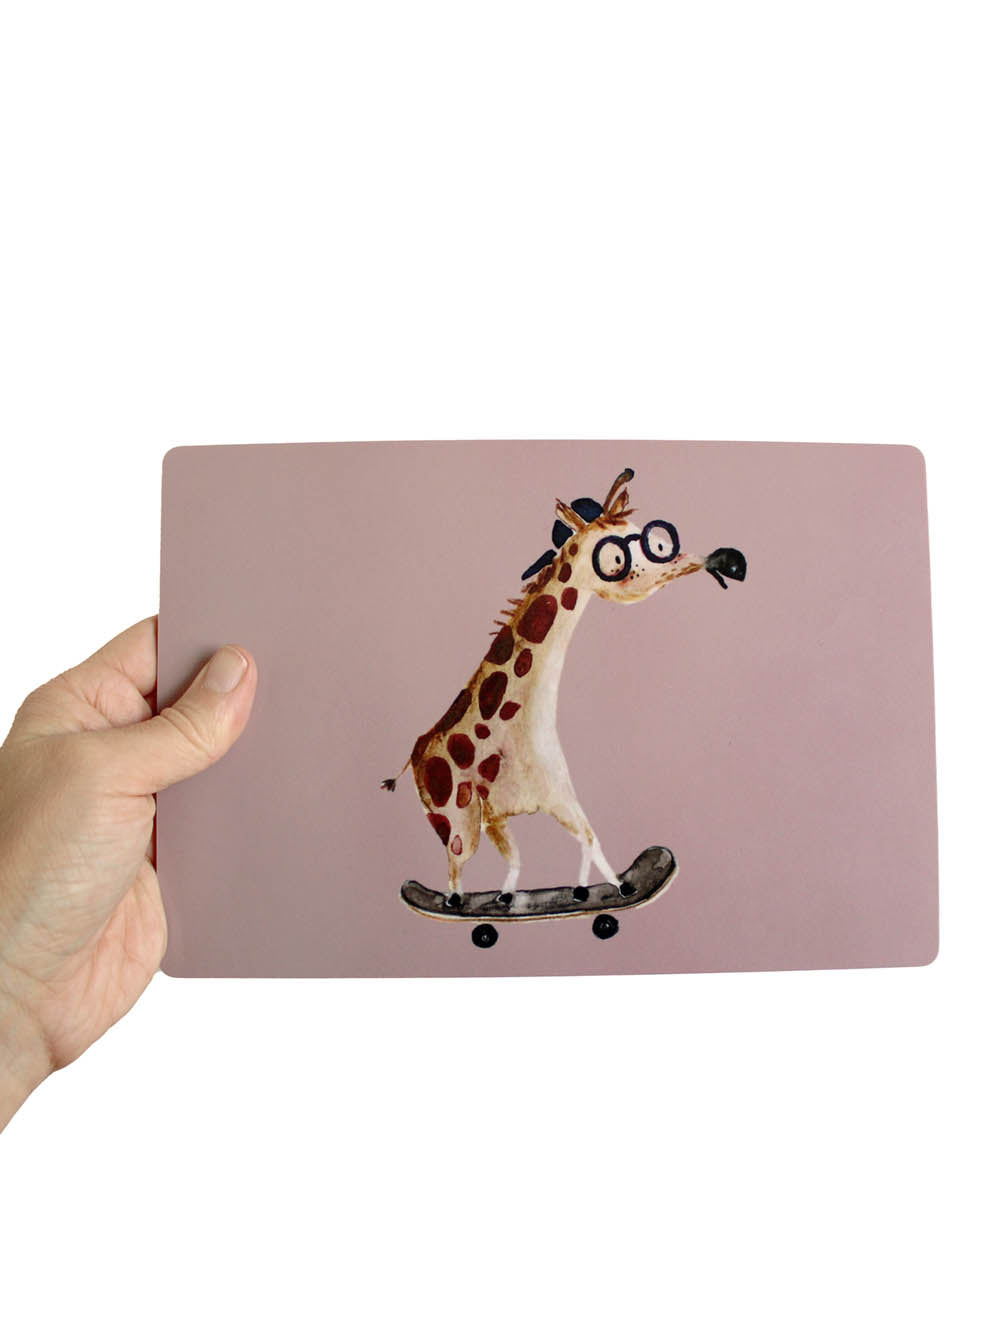 Frühstücksbrettchen Giraffe auf Skateboard in rose in der Hand